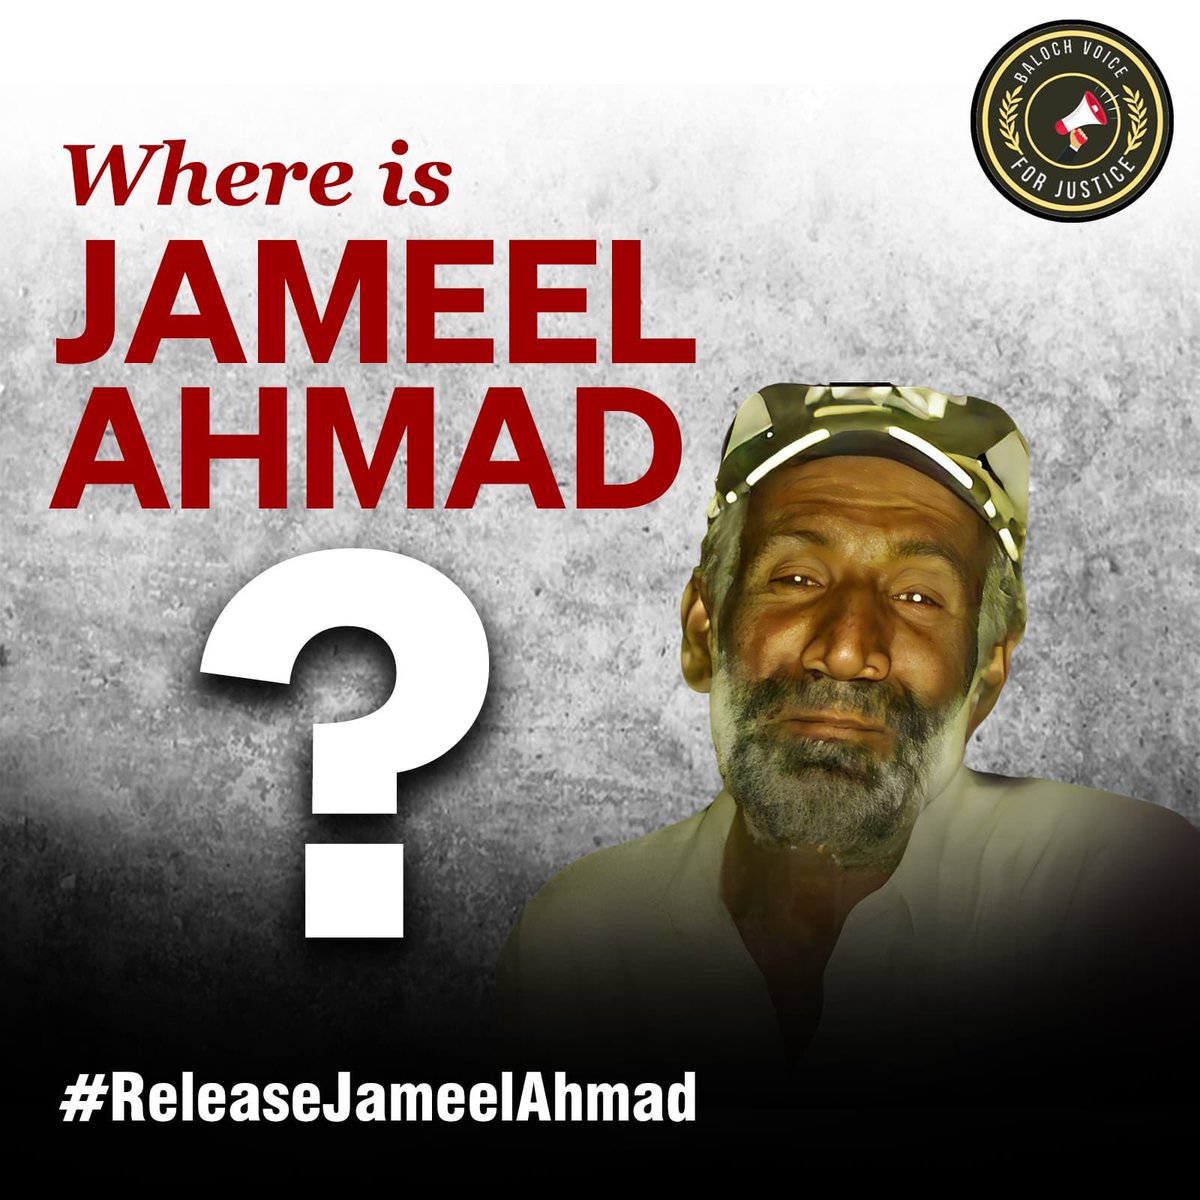 #ReleaseJameelAhmad 

@WGEID